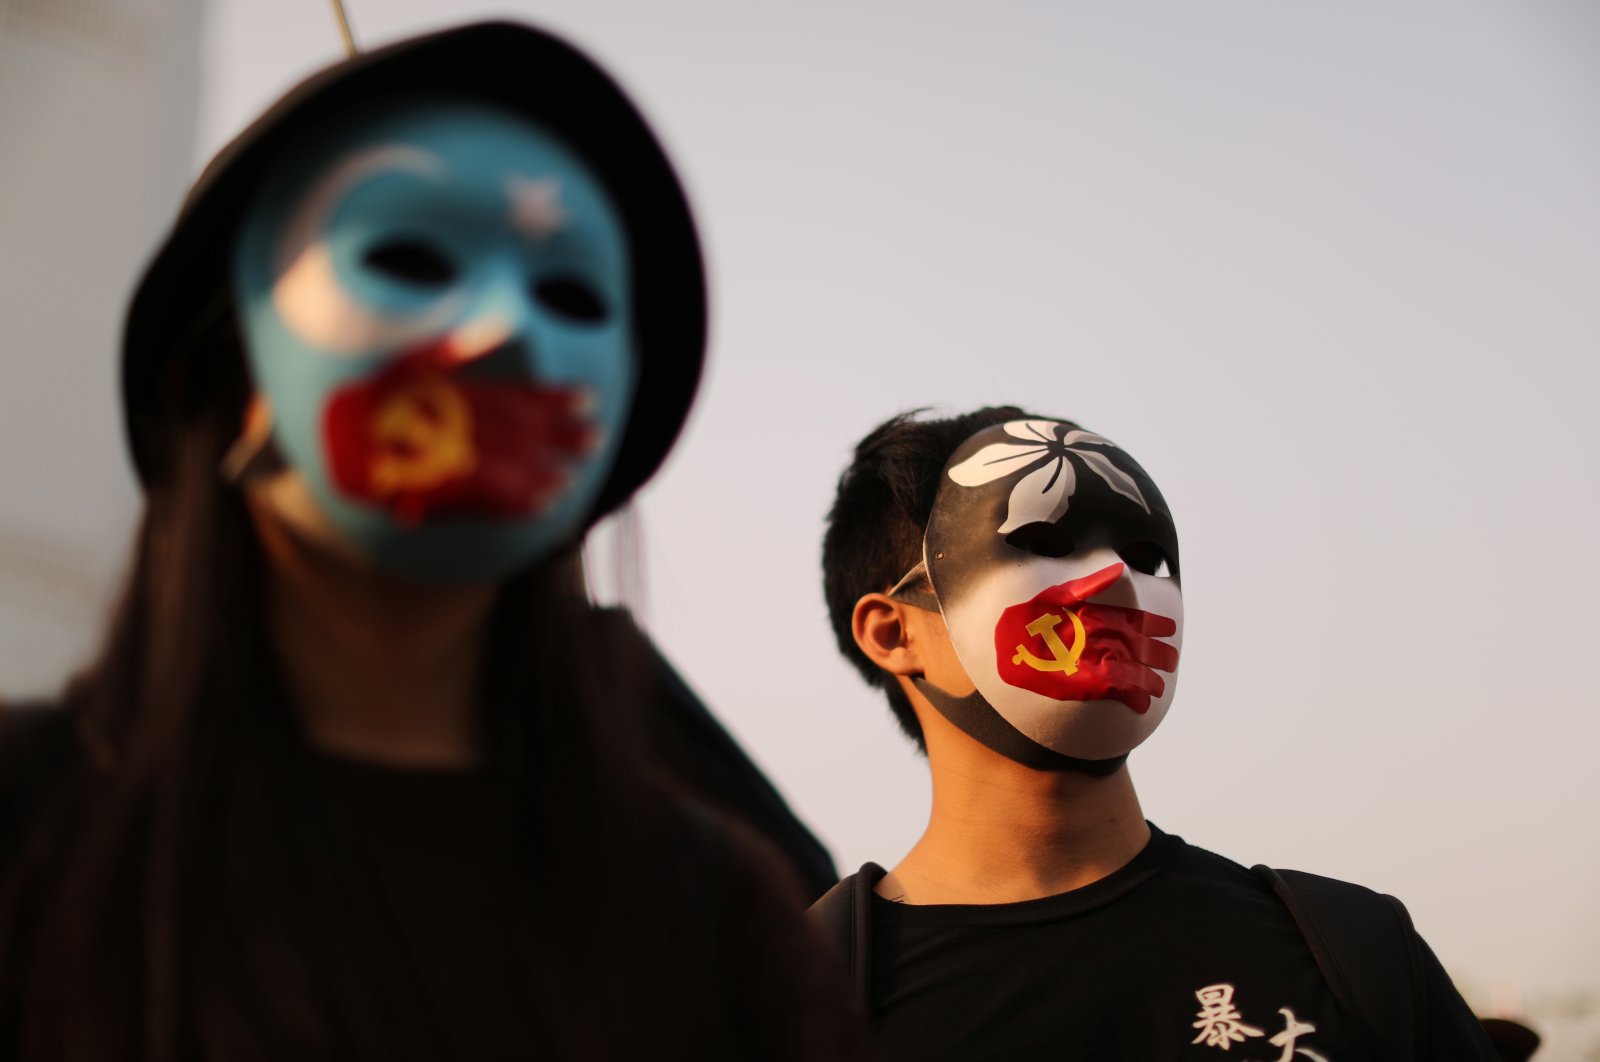 Hong Kong protesters rally in support of Xinjiang Uighurs' human rights in Hong Kong, China, Dec., 22, 2019. (Reuters Photo)